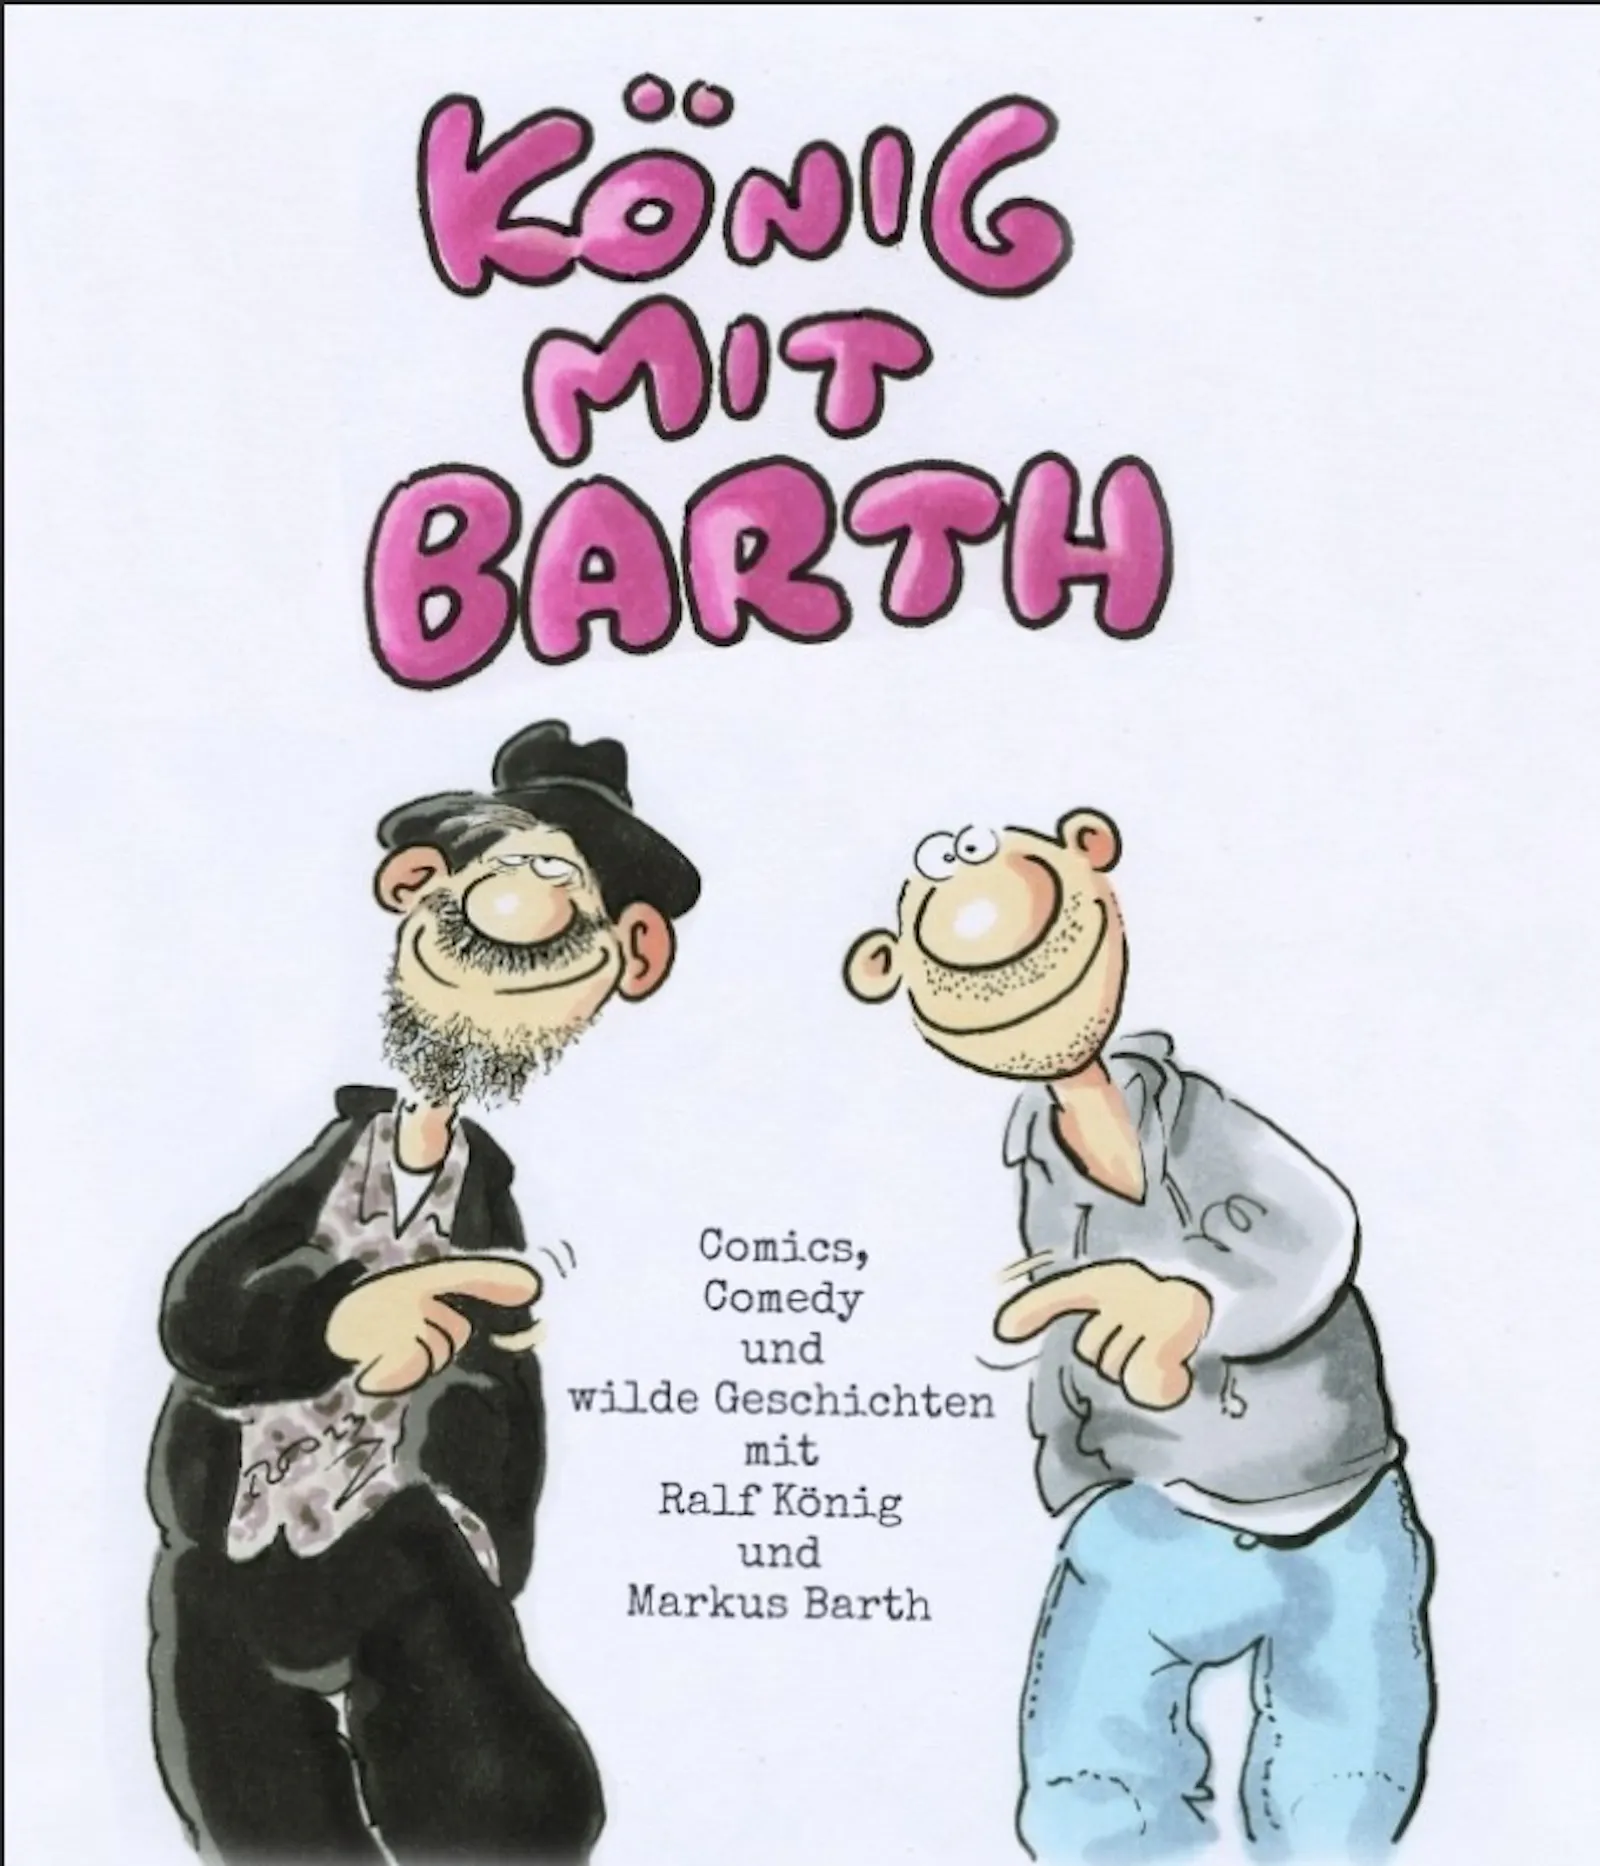 Plakat der Show "König mit Barth" mit Ralf König und Markus Barth als Knollennasen